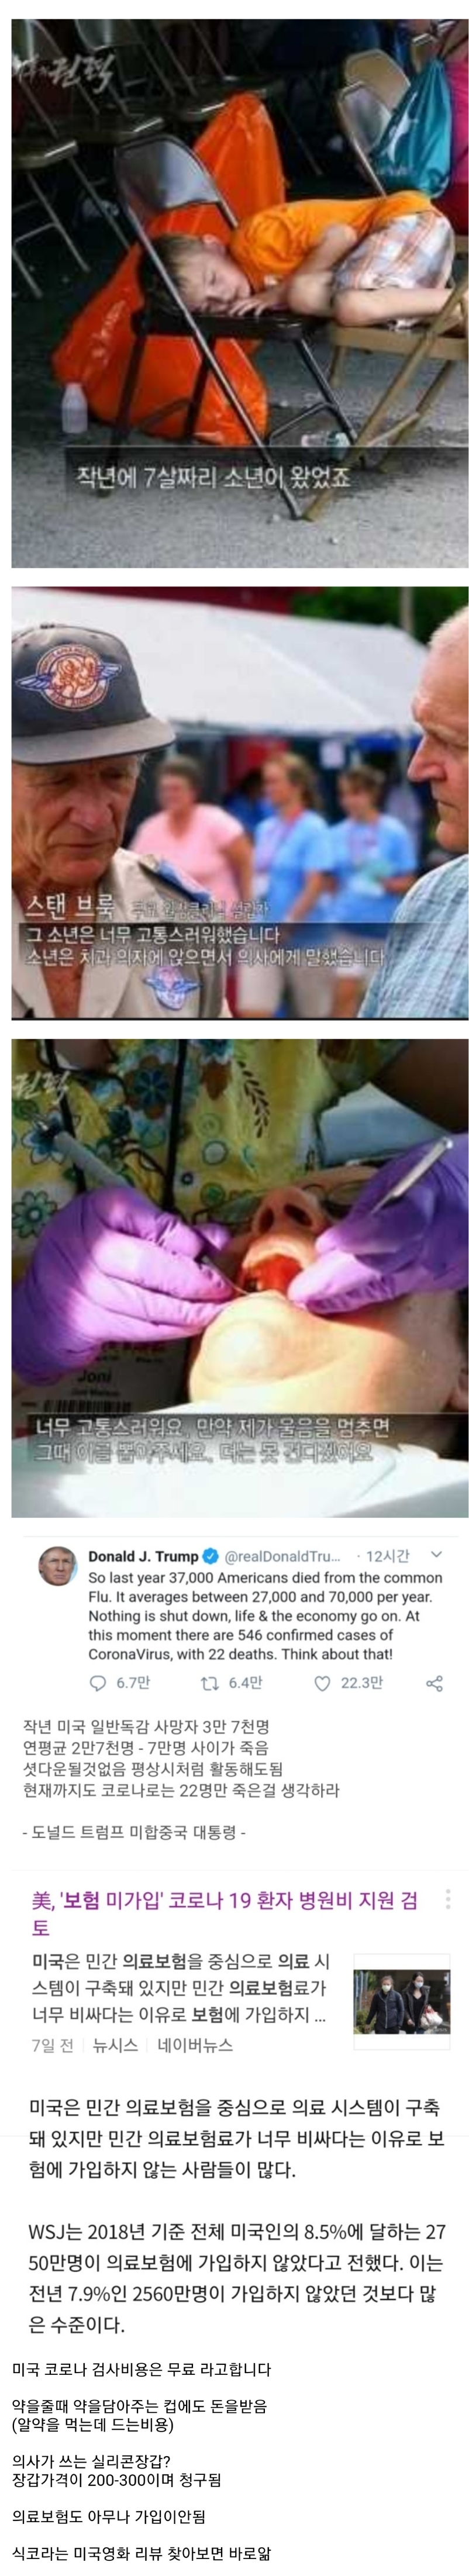 한국의 의료보험이 사람살리는 보험인 이유2.jpg